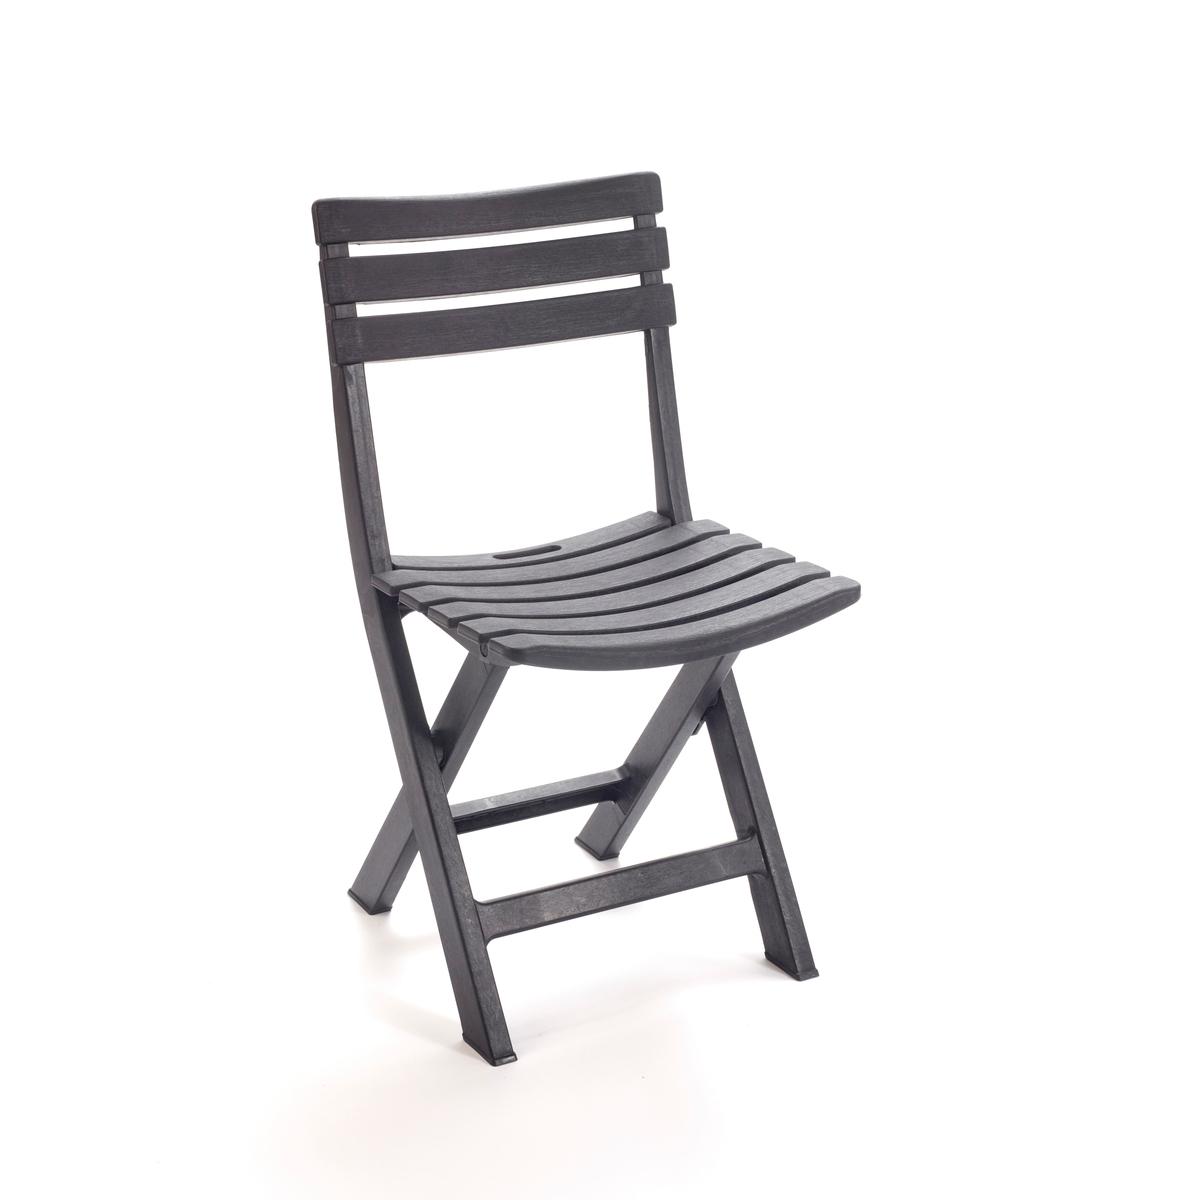 Chaise pliante effet bois - 44 x H 78 x 41 cm - Gris anthracite